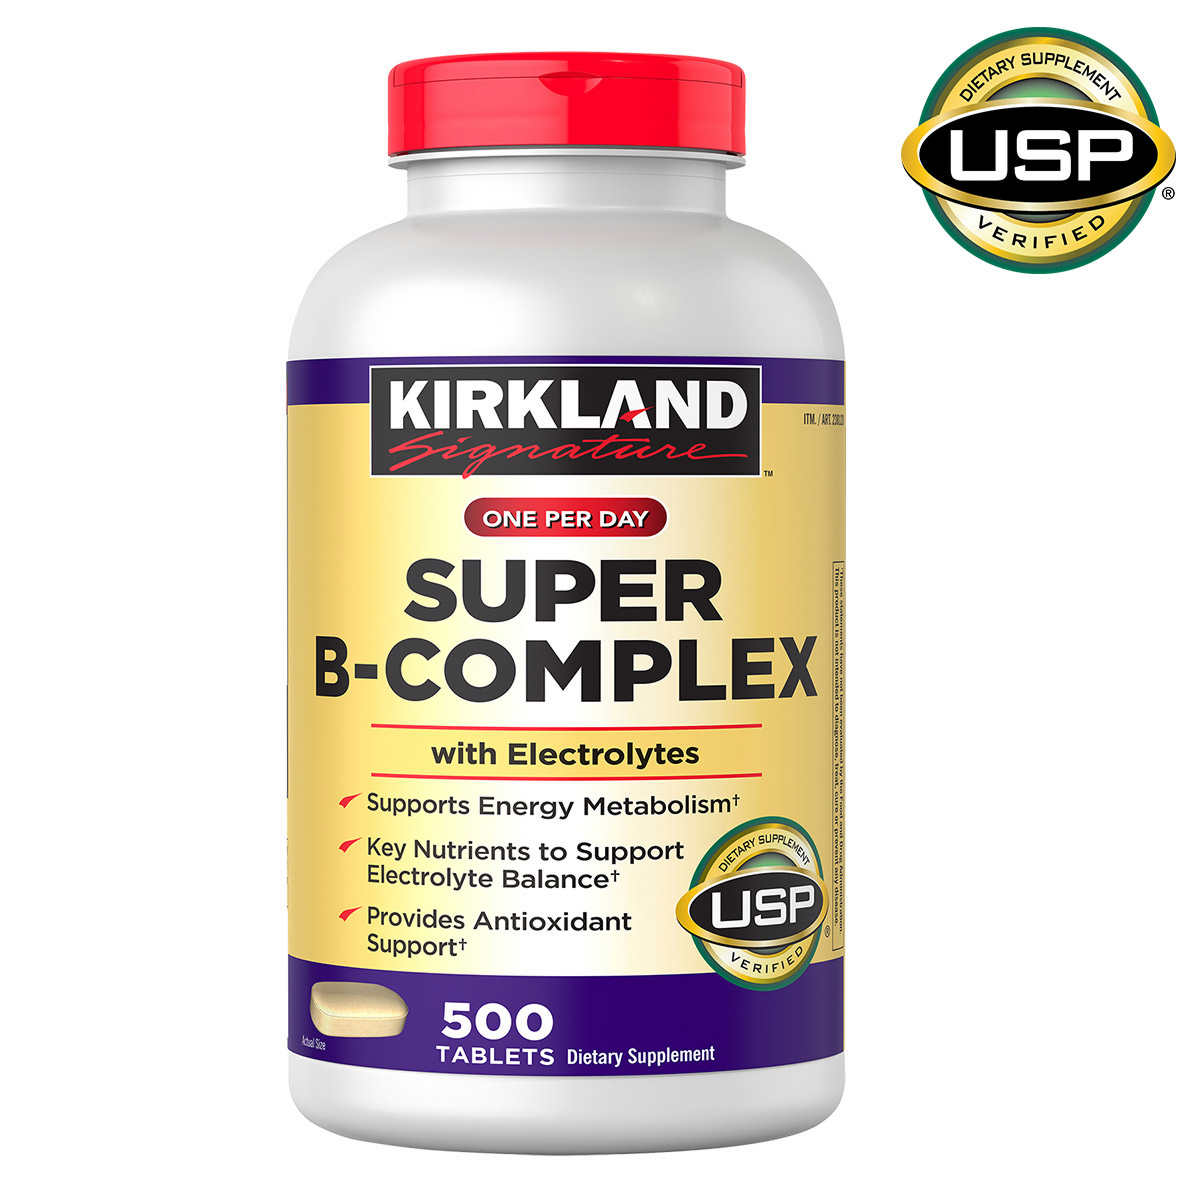 Vitamin B Kirkland Super B-Complex tăng khả năng nấp thụ, chuyển hóa năng lượng, tăng cường hệ miễn dịch, giảm căng thẳng - QuaTangMe Extaste